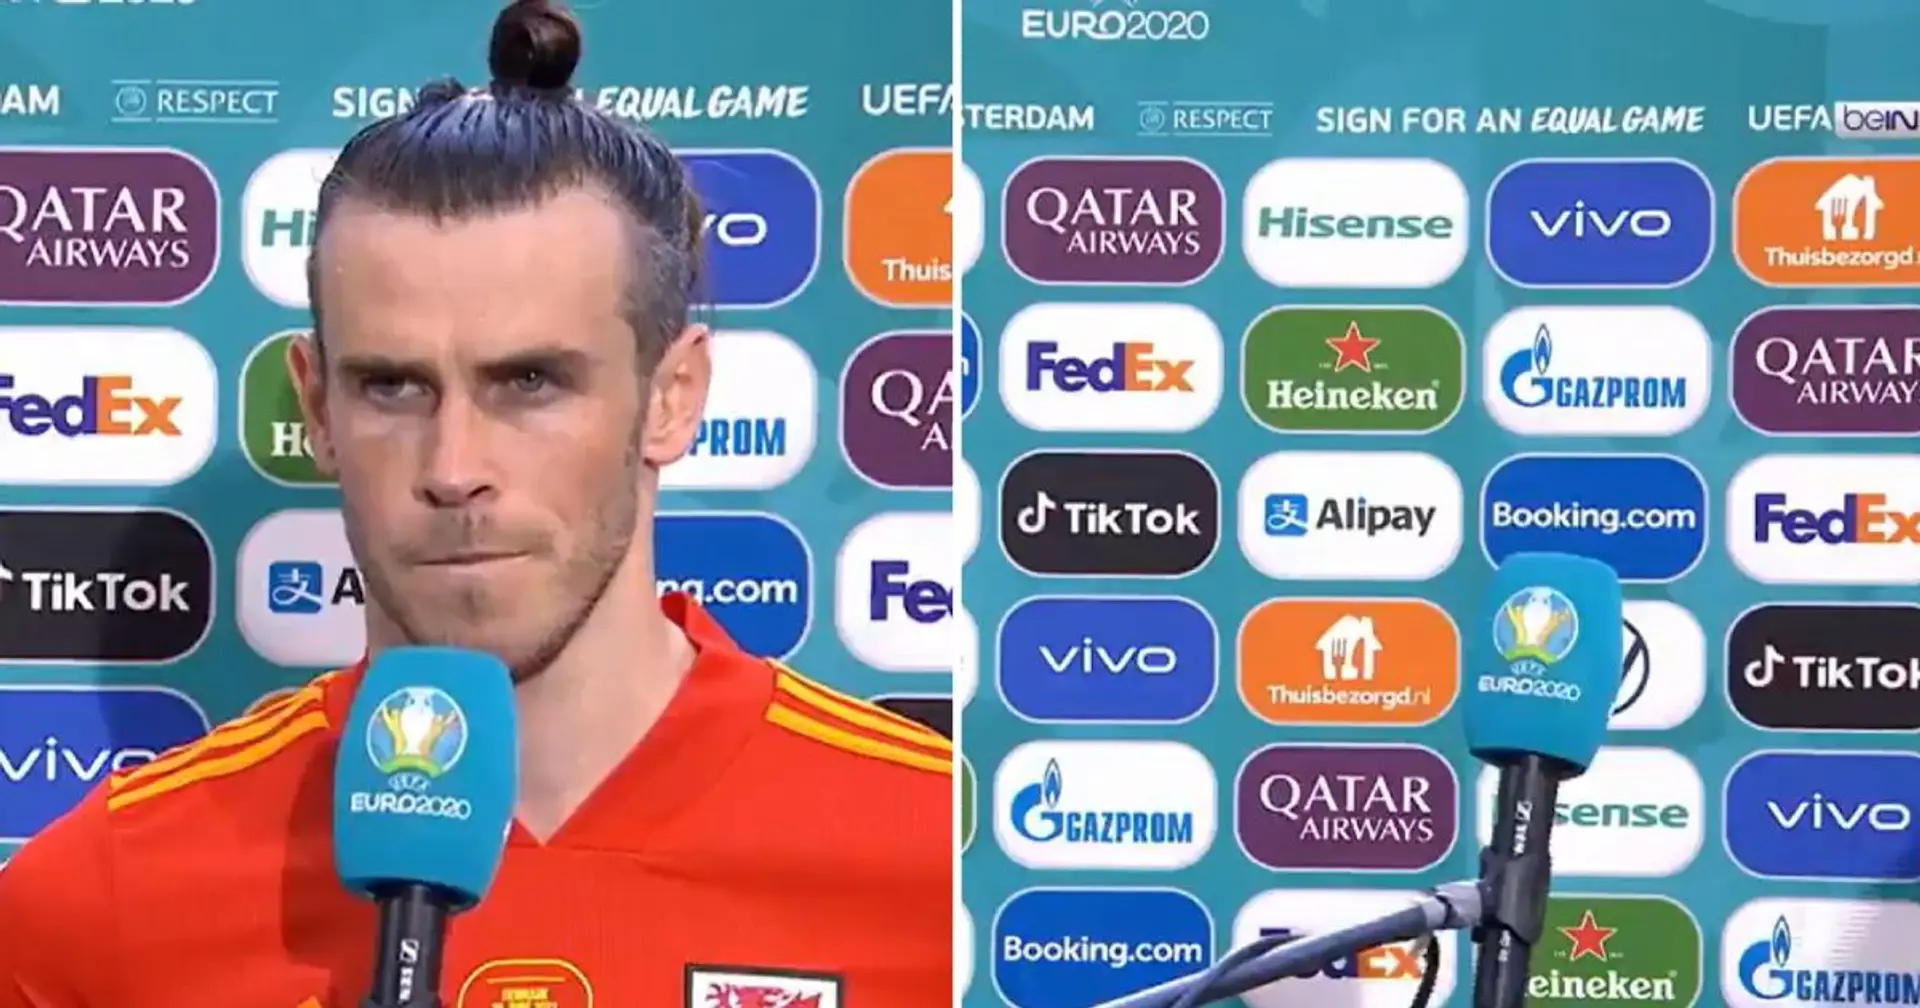 Gareth Bale geht weg während des Interviews nach "dummer" Frage des Reporters